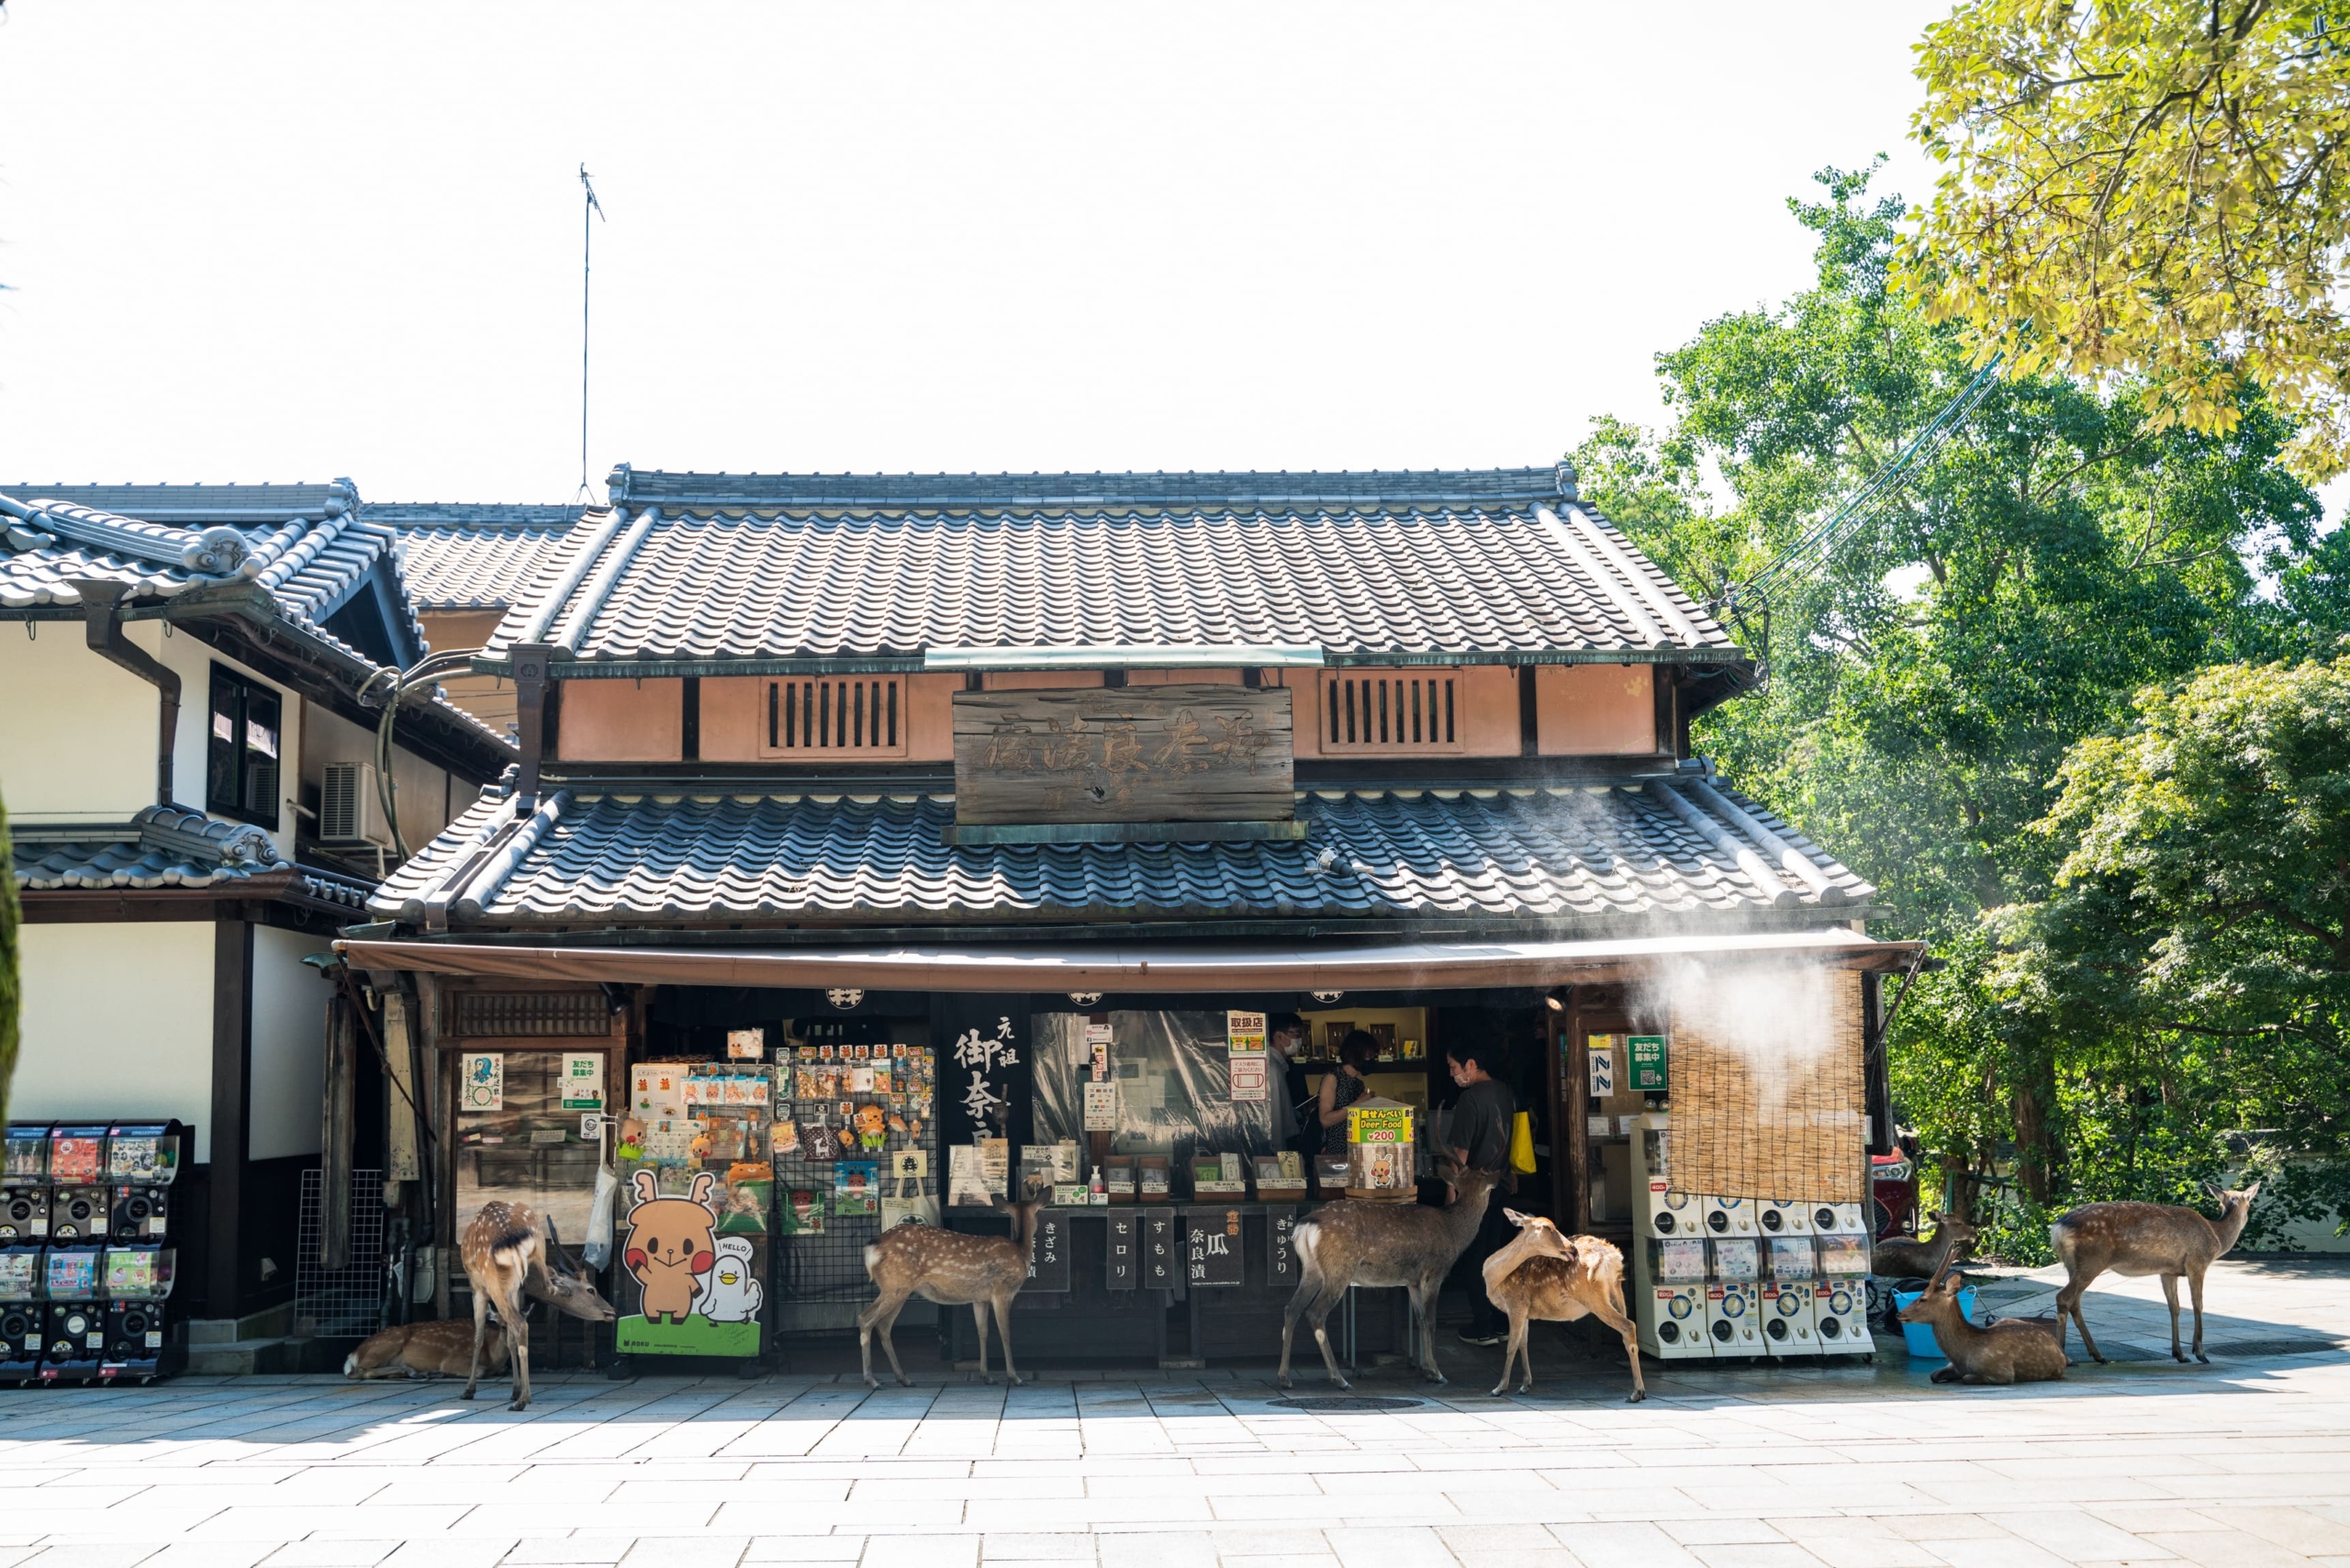 Completely additive-free fermented food “Mori Narazuke Shop” established in 1869